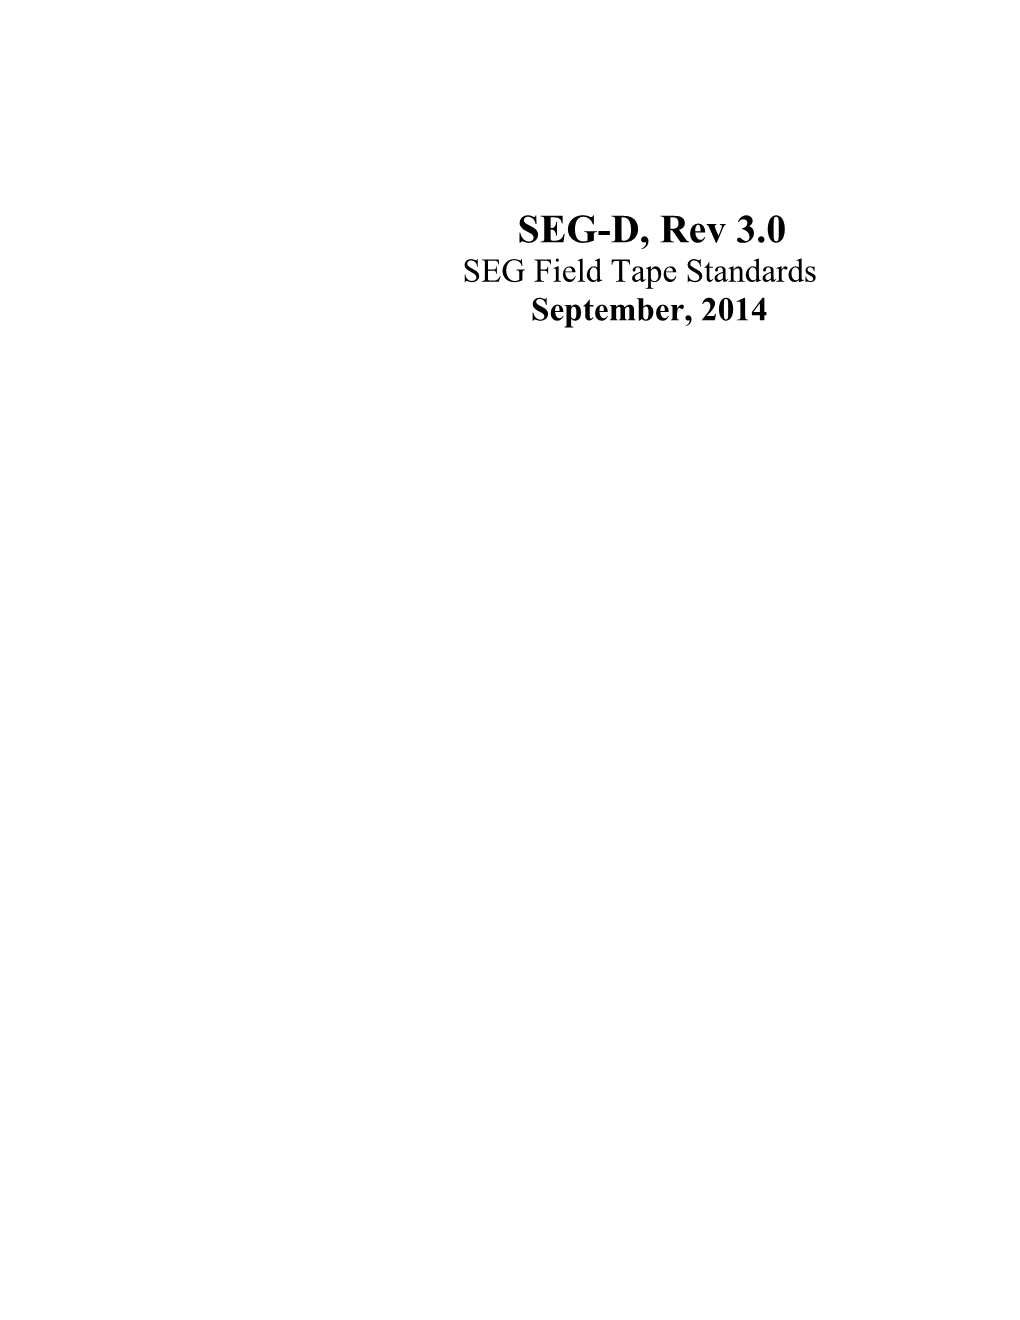 SEG-D, Rev 3.0 SEG Field Tape Standards September, 2014